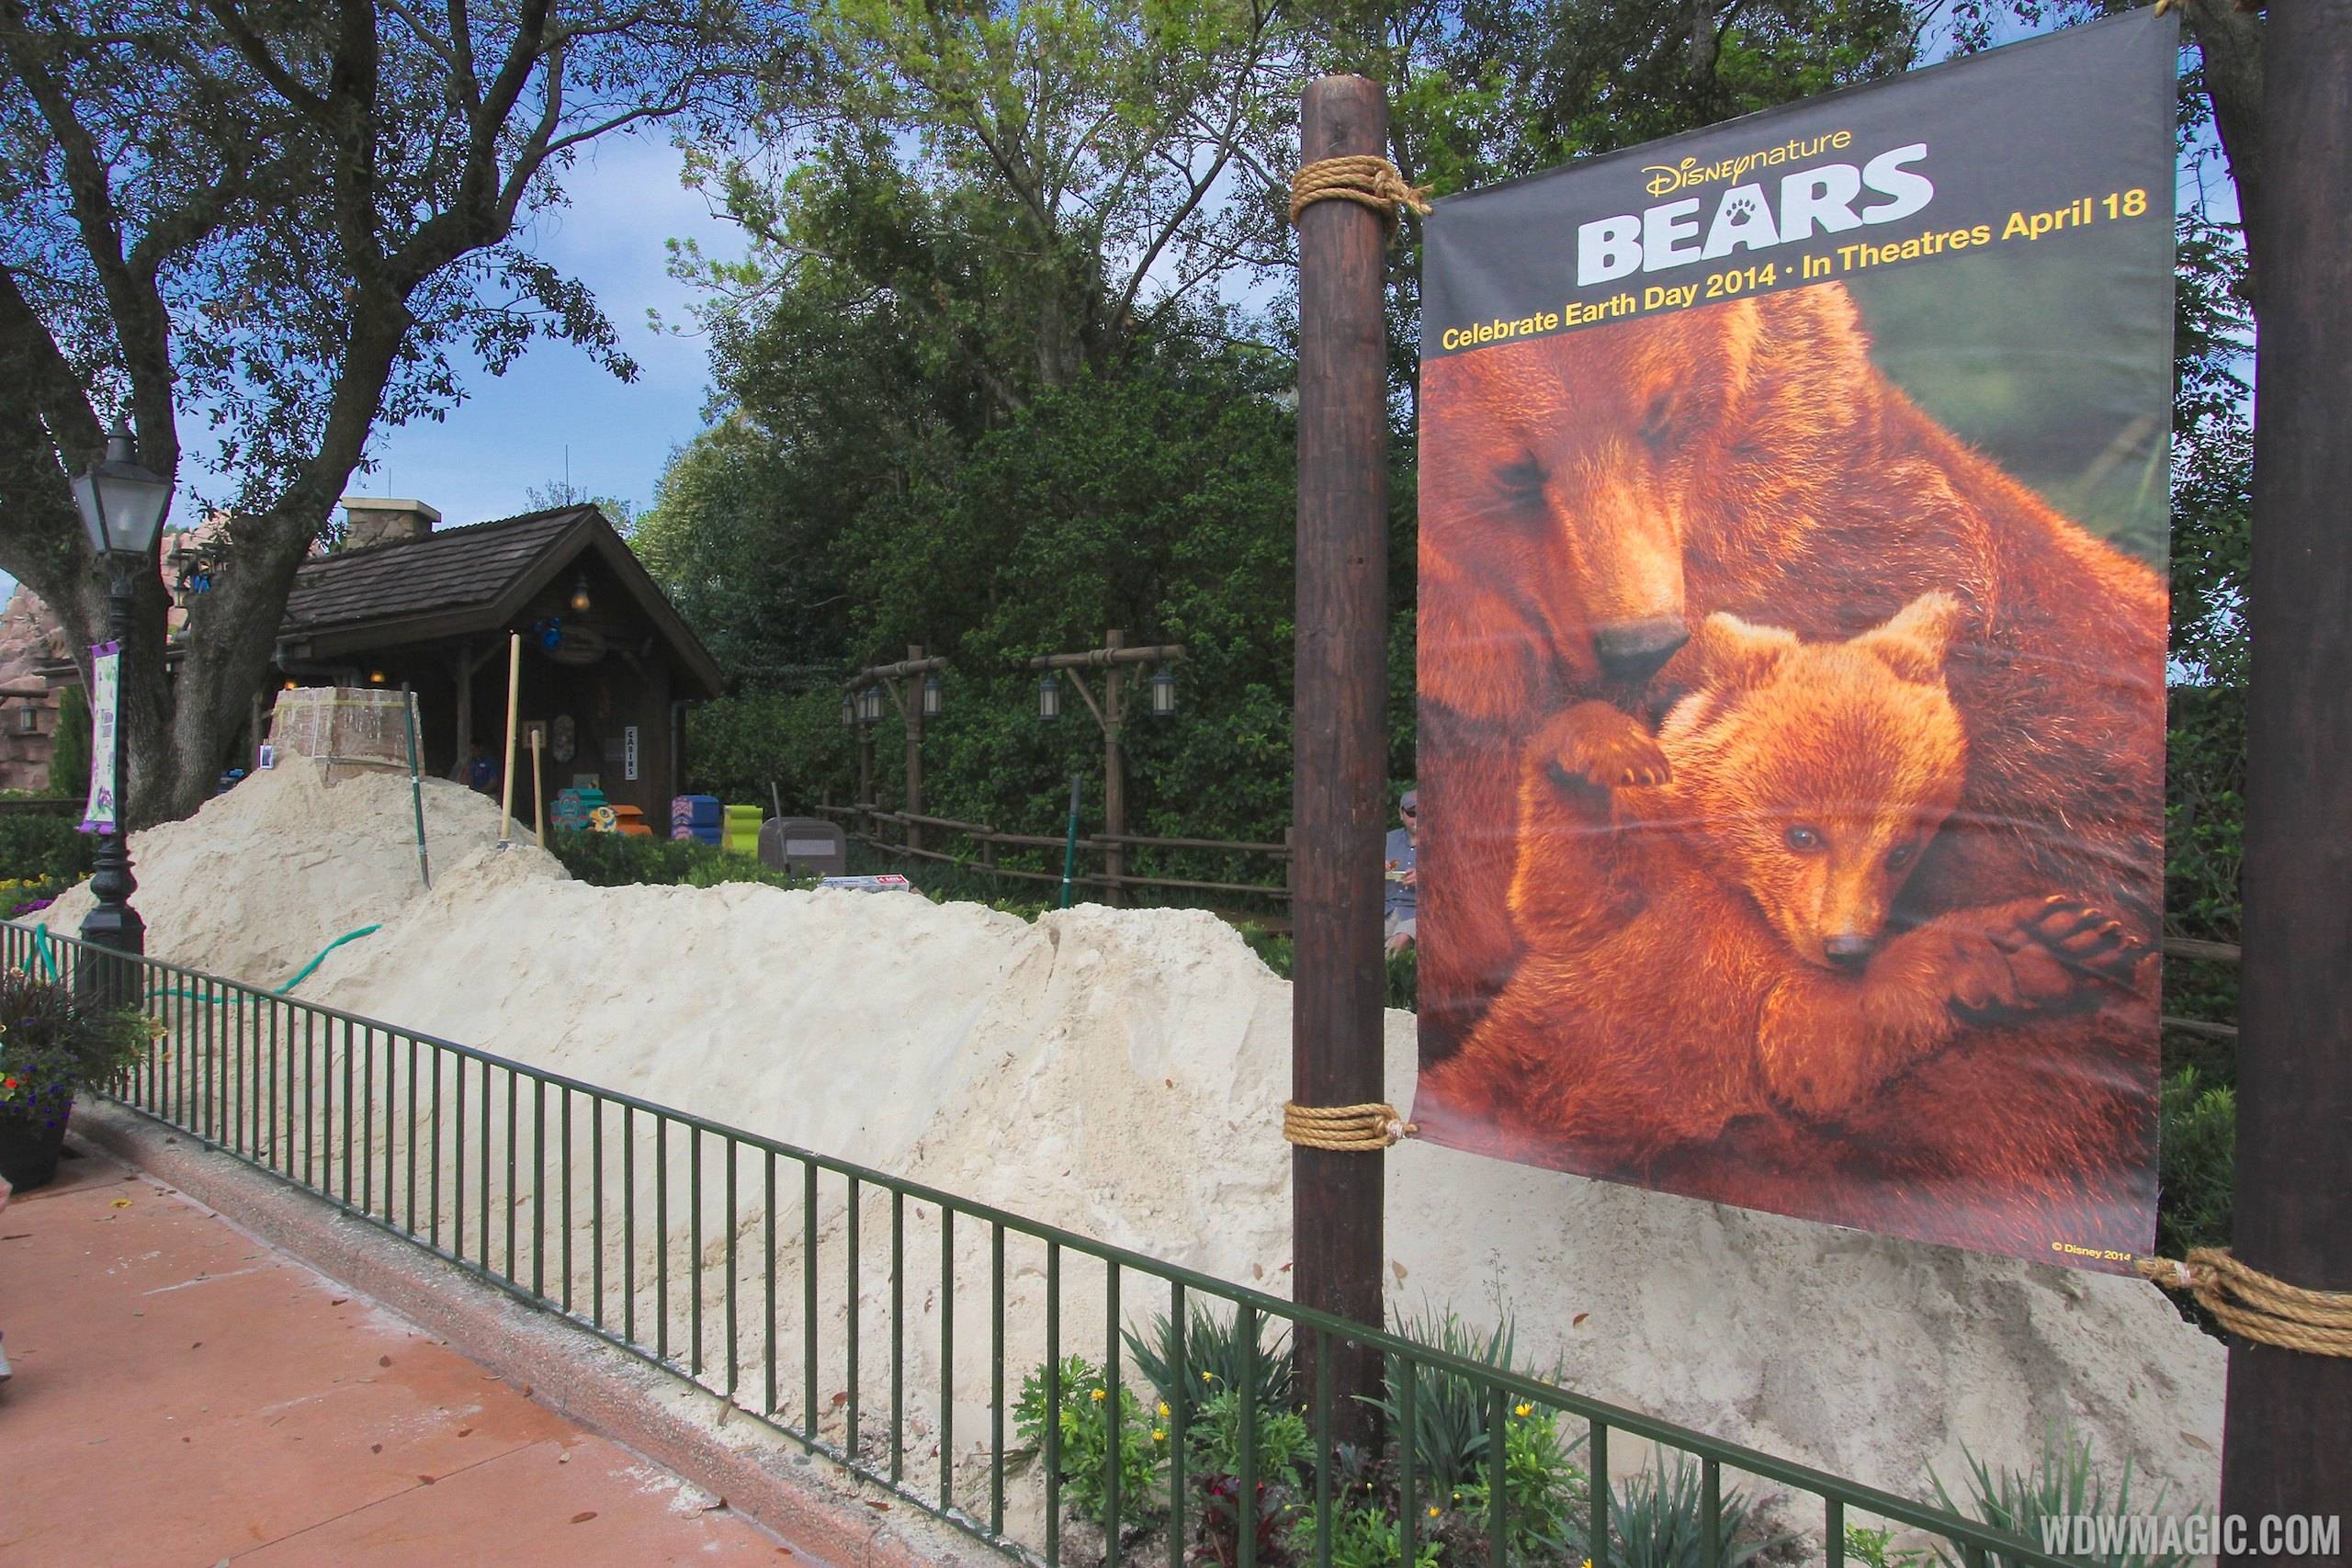 2014 Epcot Flower and Garden Festival - Disney Nature Bears sand sculpture